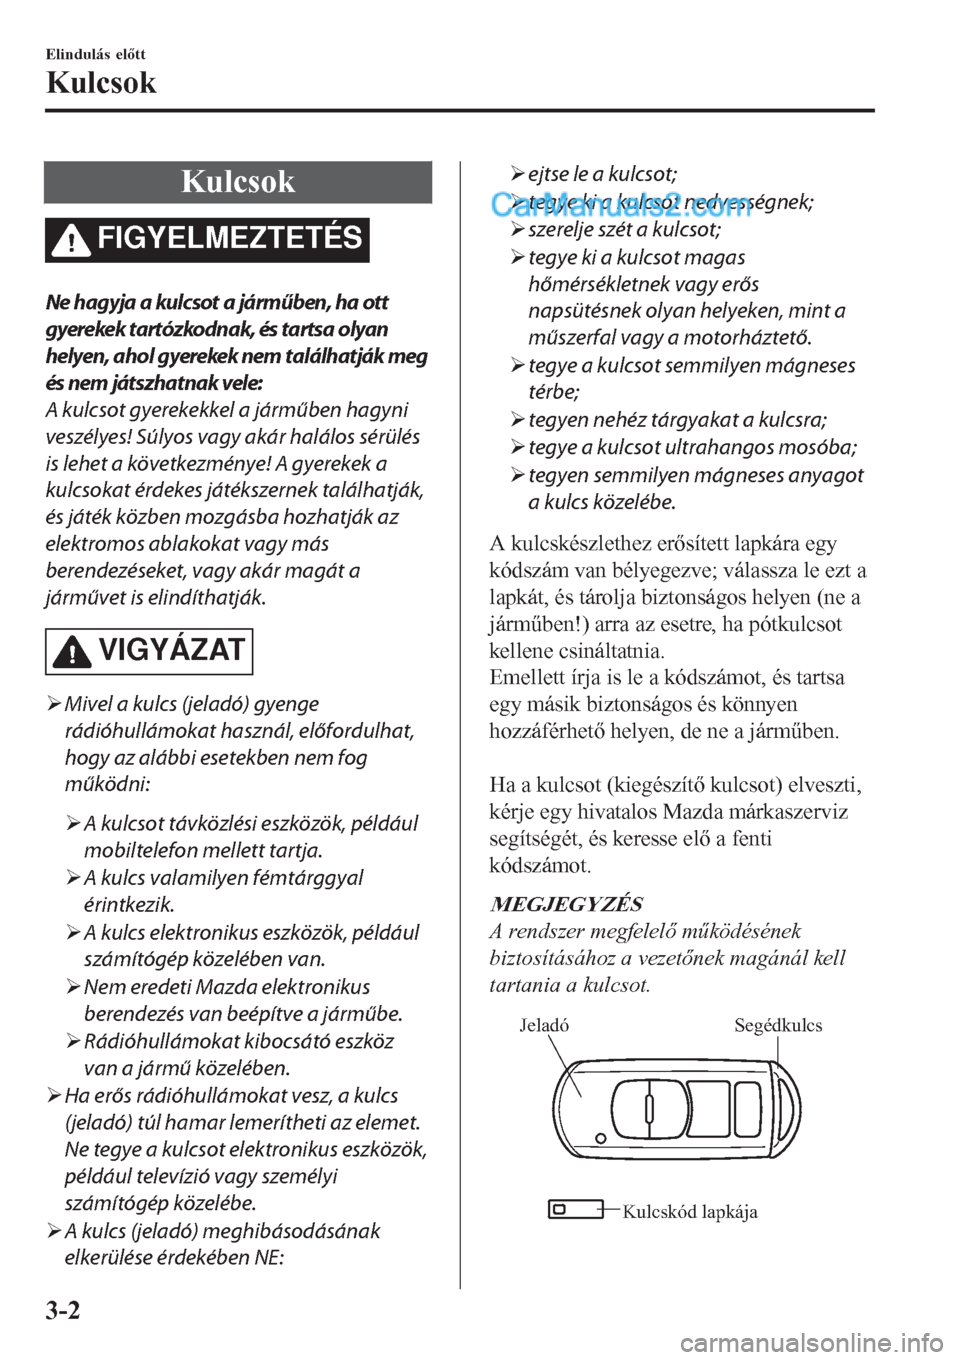 MAZDA MODEL CX-5 2017  Kezelési útmutató (in Hungarian) Kulcsok
FIGYELMEZTETÉS
Ne hagyja a kulcsot a járműben, ha ott
gyerekek tartózkodnak, és tartsa olyan
helyen, ahol gyerekek nem találhatják meg
és nem játszhatnak vele:
A kulcsot gyerekekkel a